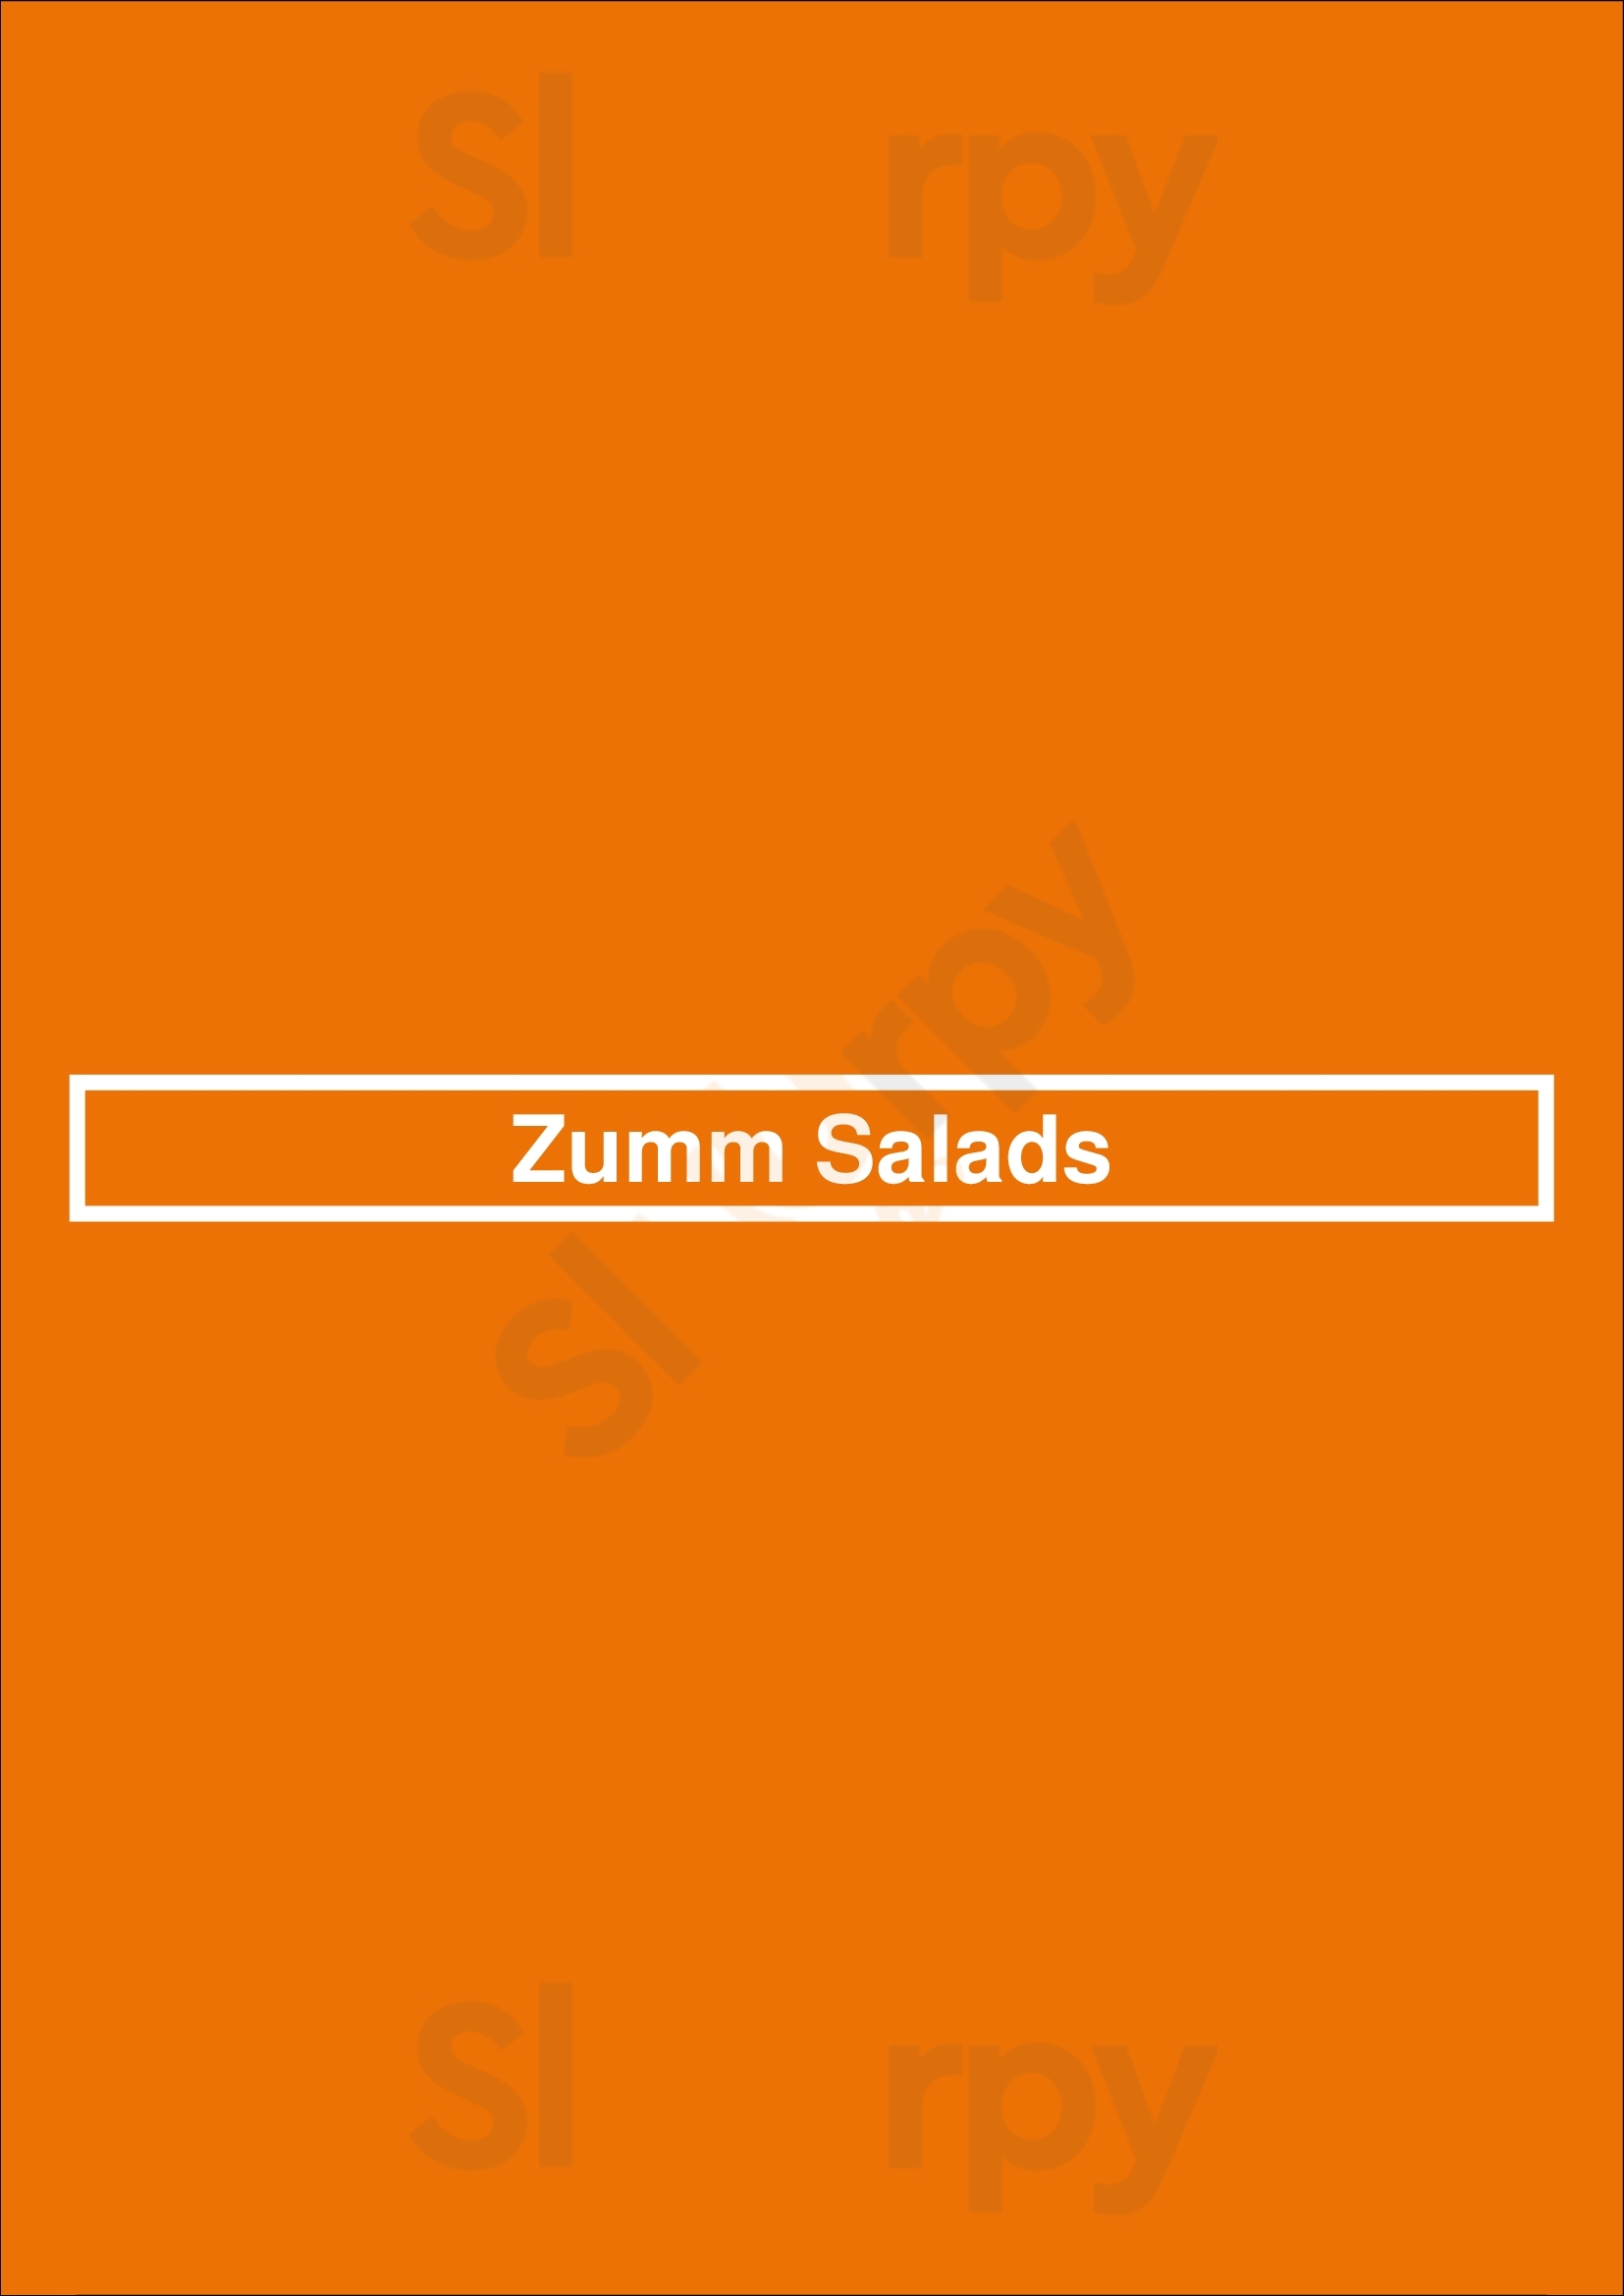 Zumm Salads Valencia Menu - 1